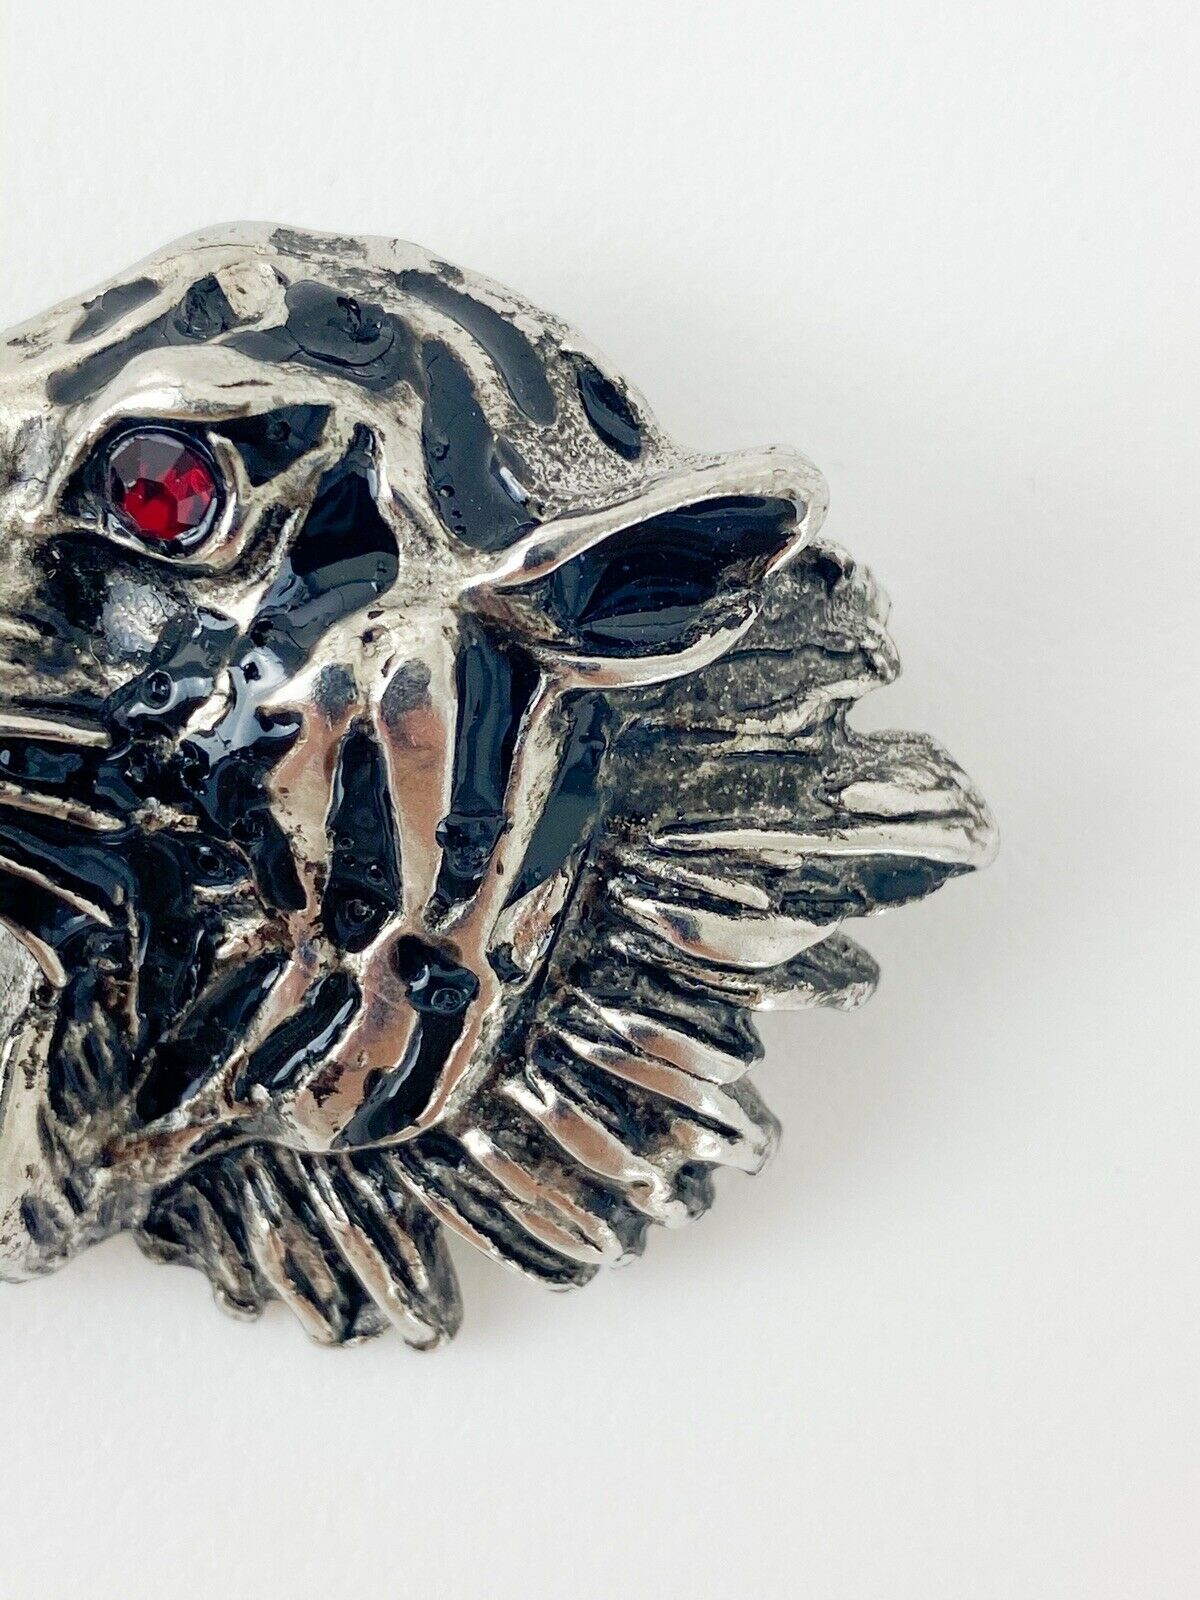 【SOLD OUT】GIORGIO ARMANI Silver Tone Tiger Head Brooch Pin Crystal Rhinestone Ruby